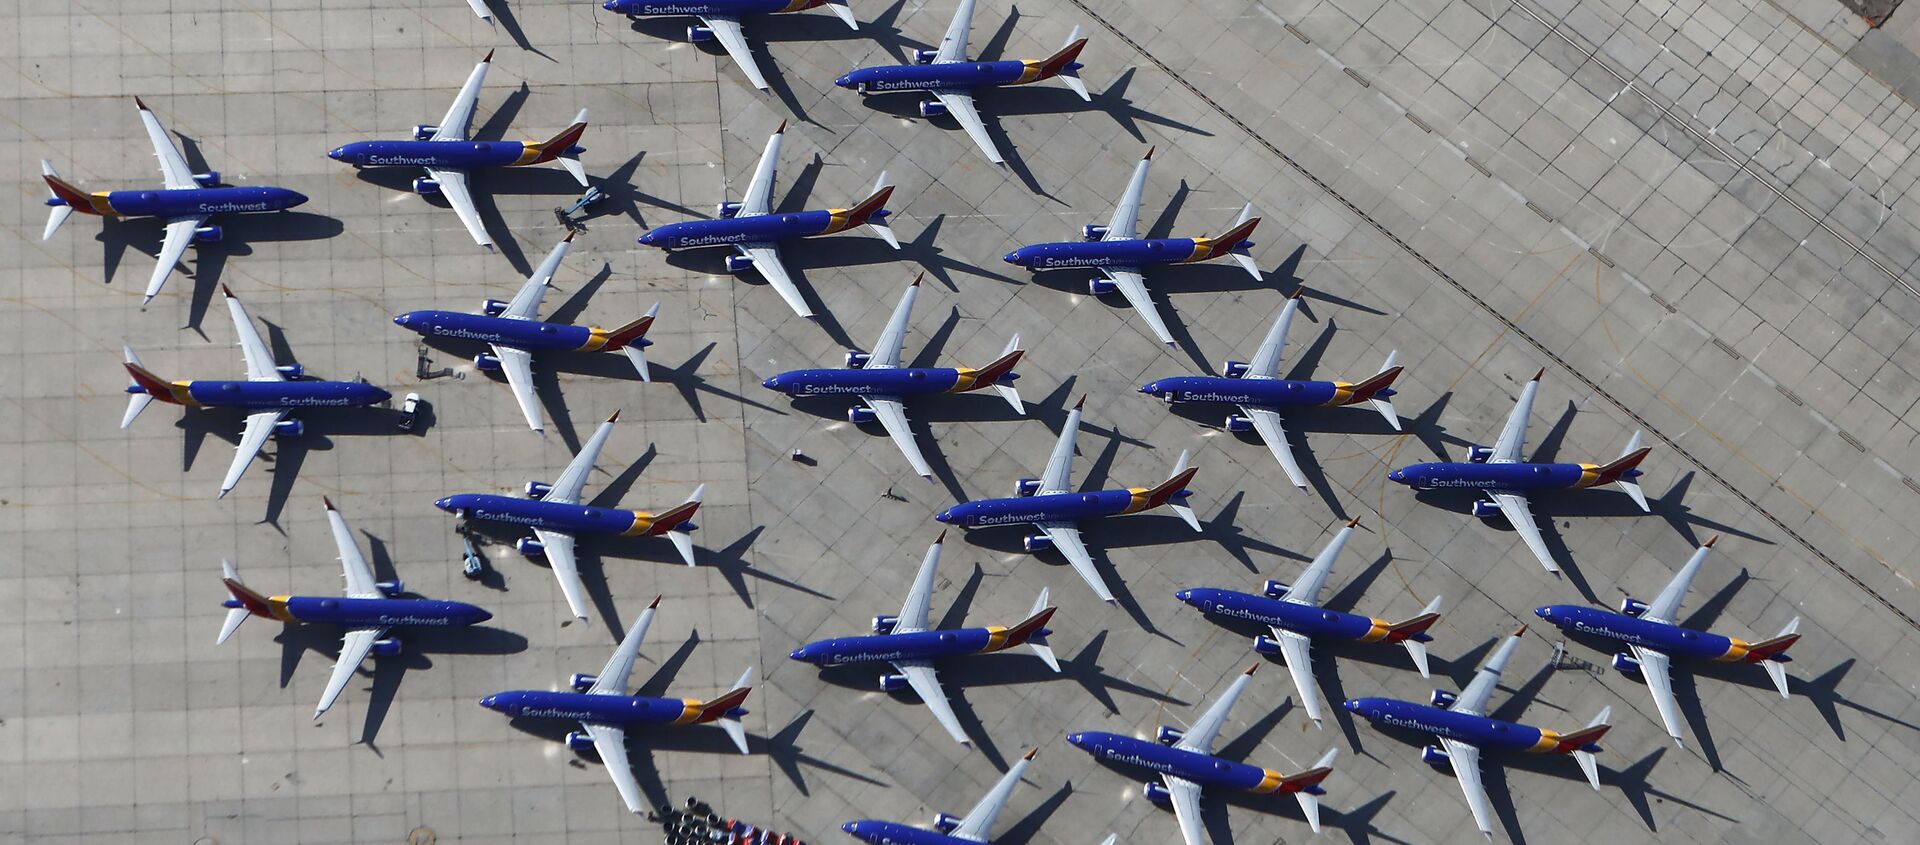 طائرات من طراز بوينغ 737 ماكس التابعة لشركة الطيران ساوث ويست (Southwest Airlines) في مطار فيكتورفيل، كاليفورنيا، الولايات المتحدة 27 مارس/ آذار 2019 - سبوتنيك عربي, 1920, 22.02.2021